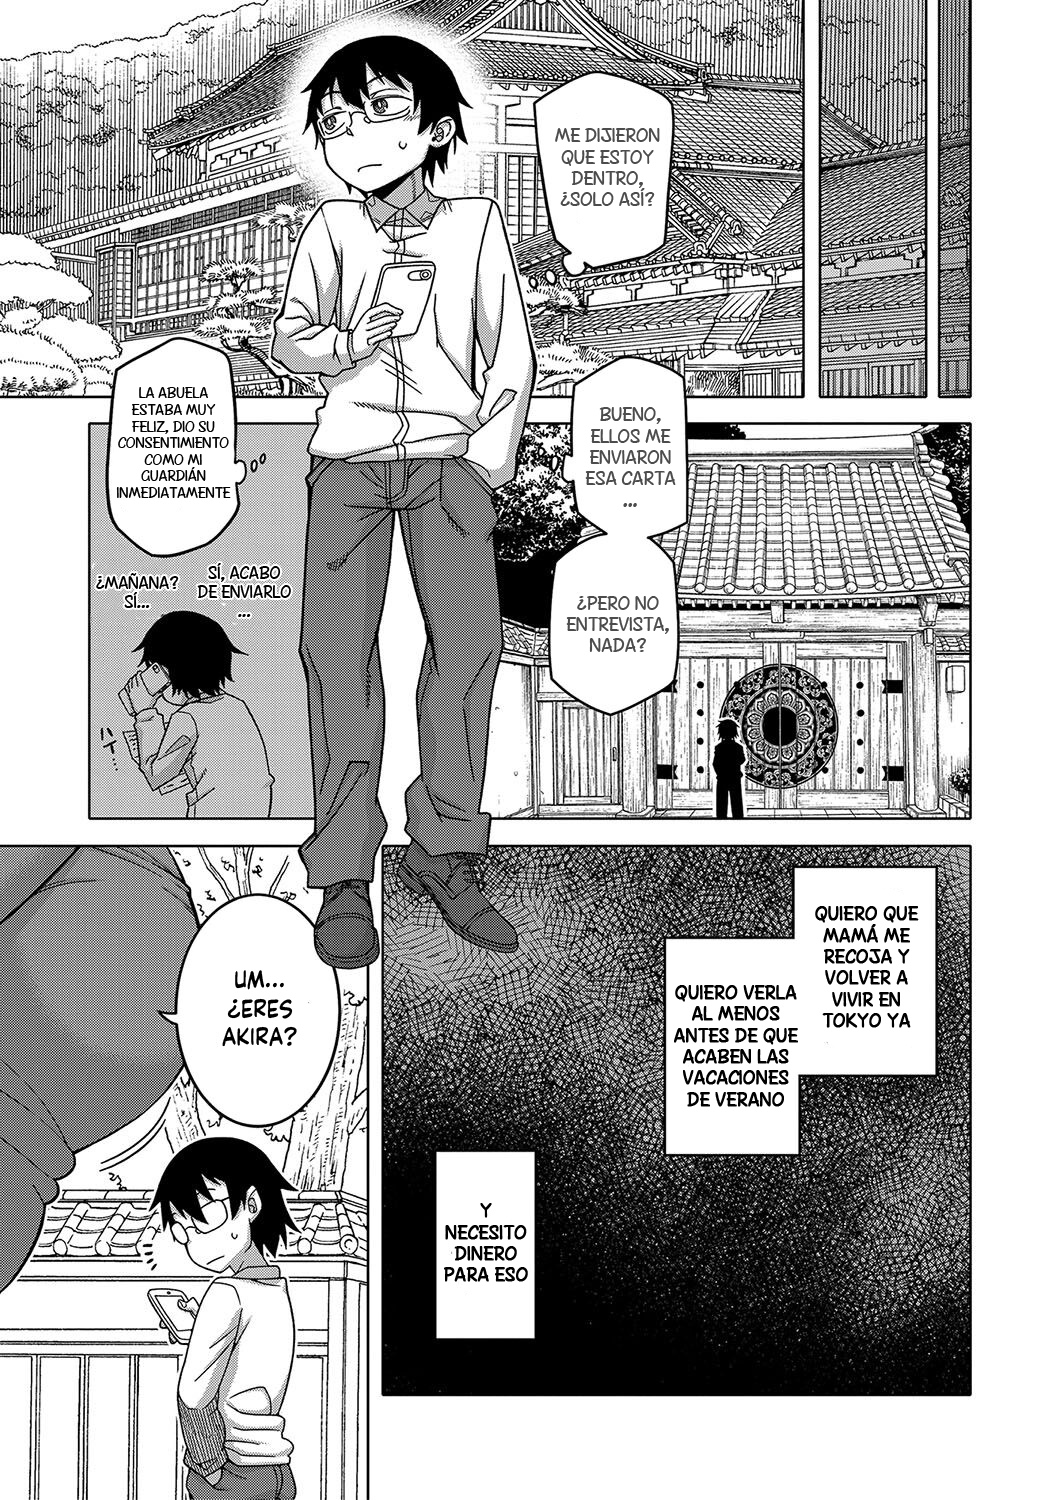 Manga KAMI-SAMA NO TSUKURIKATA-THE MAKING OF A CULT LEADER Chapter 1 image number 24